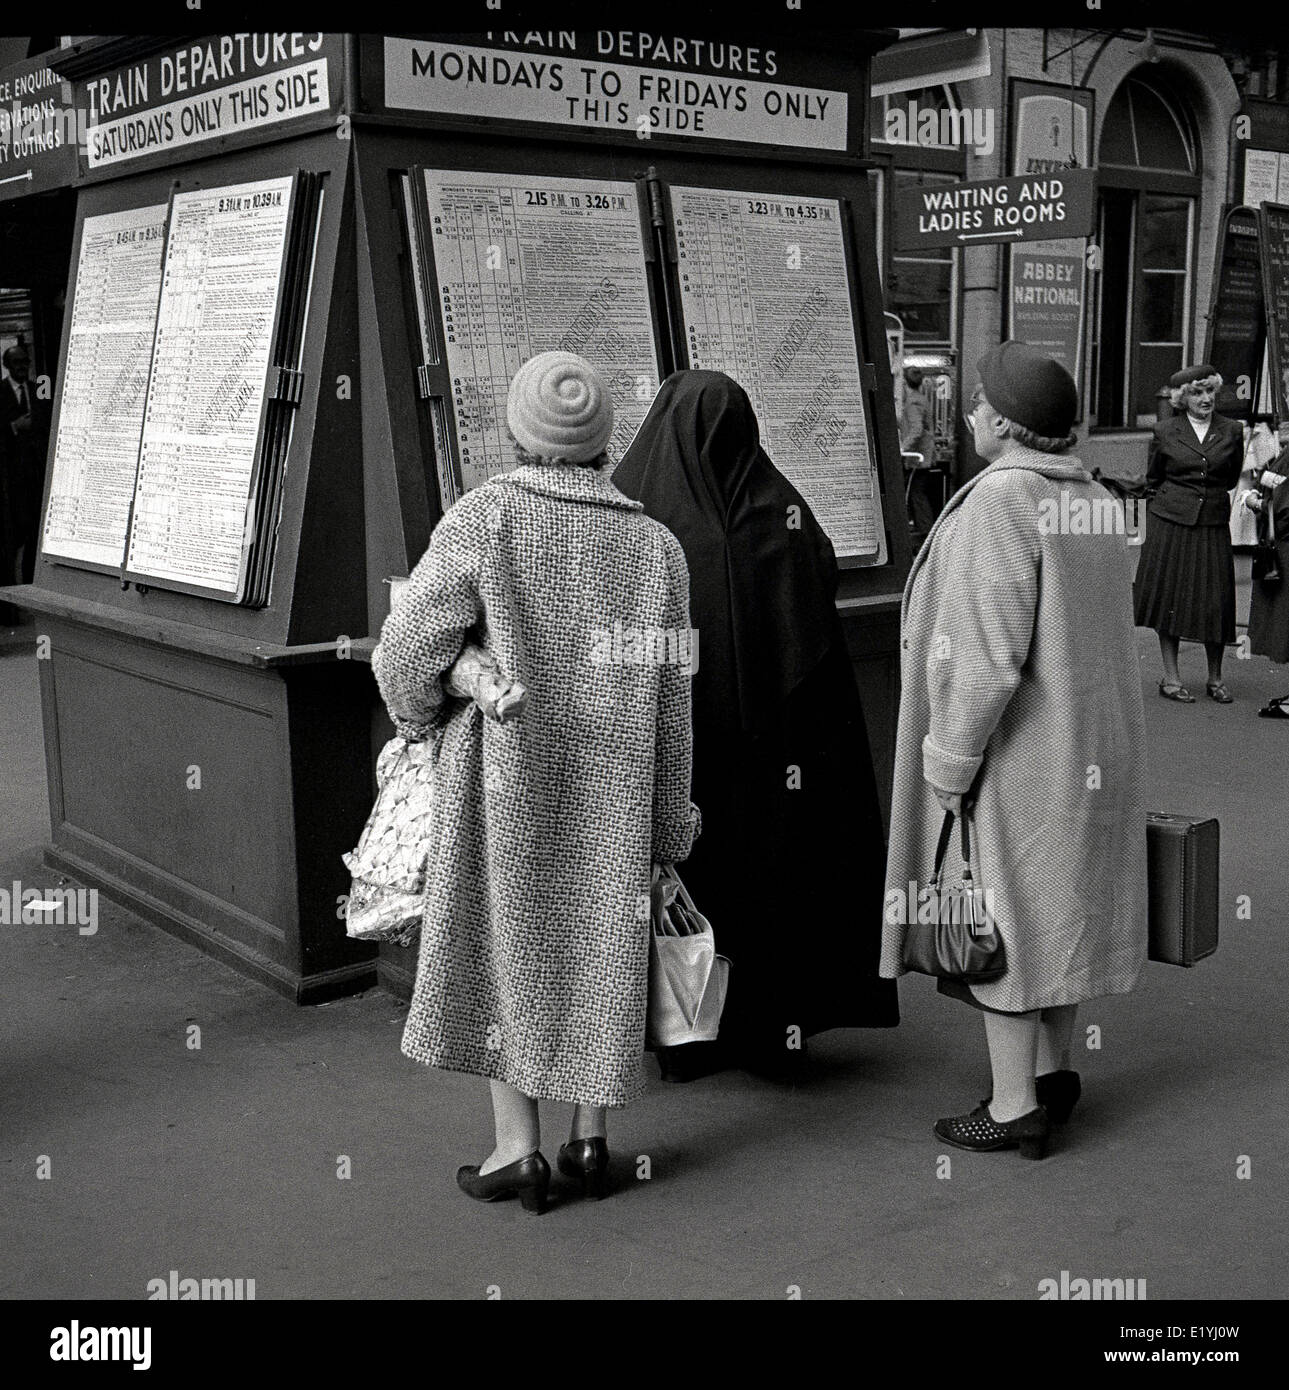 1950 foto histórica, tres señoras mayores con Abrigos y sombreros, uno con un velo negro, mirando el calendario de información en una junta de salidas de trenes en la estación Waterloo de Londres. Foto de stock